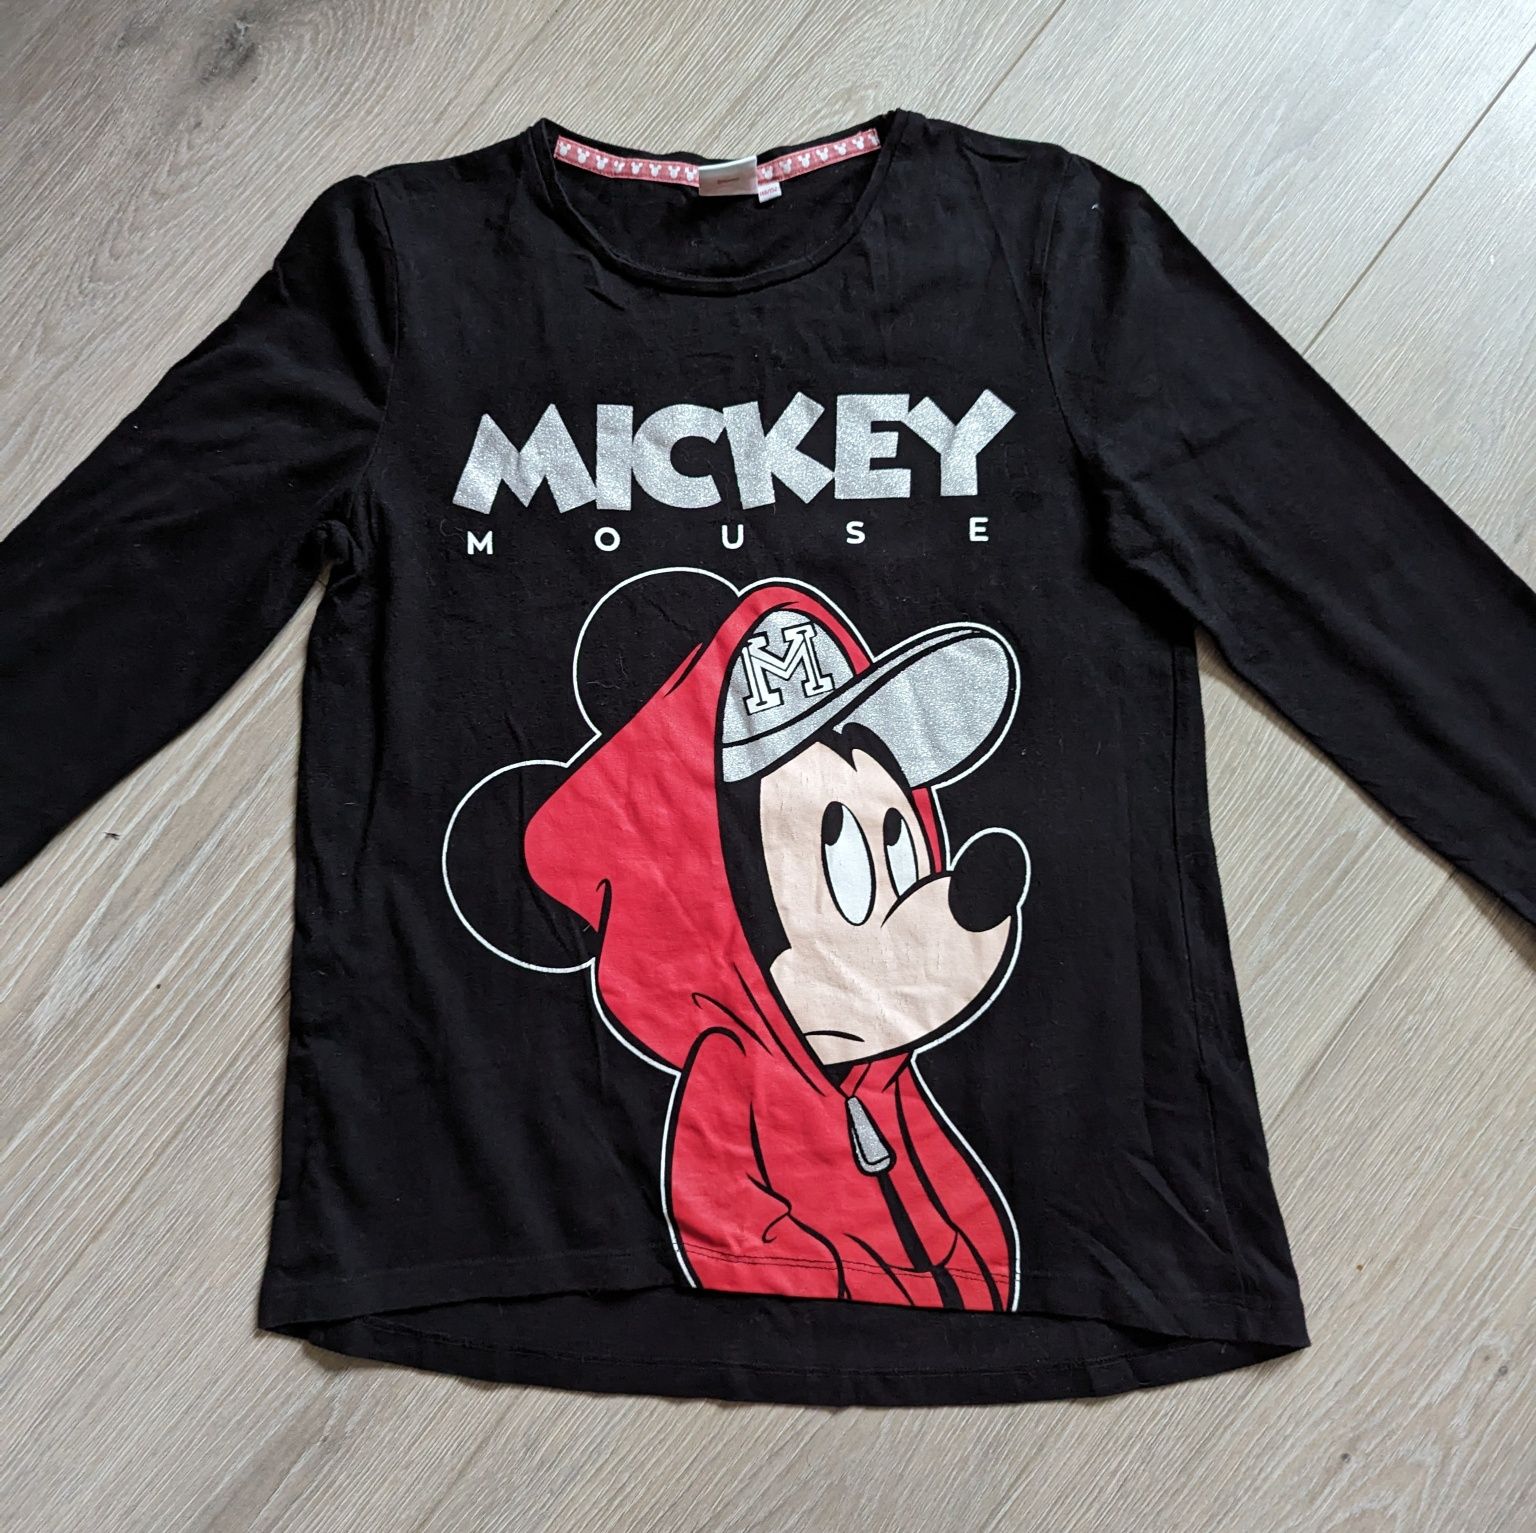 Koszulka z Mickey Mouse rozm 146/152